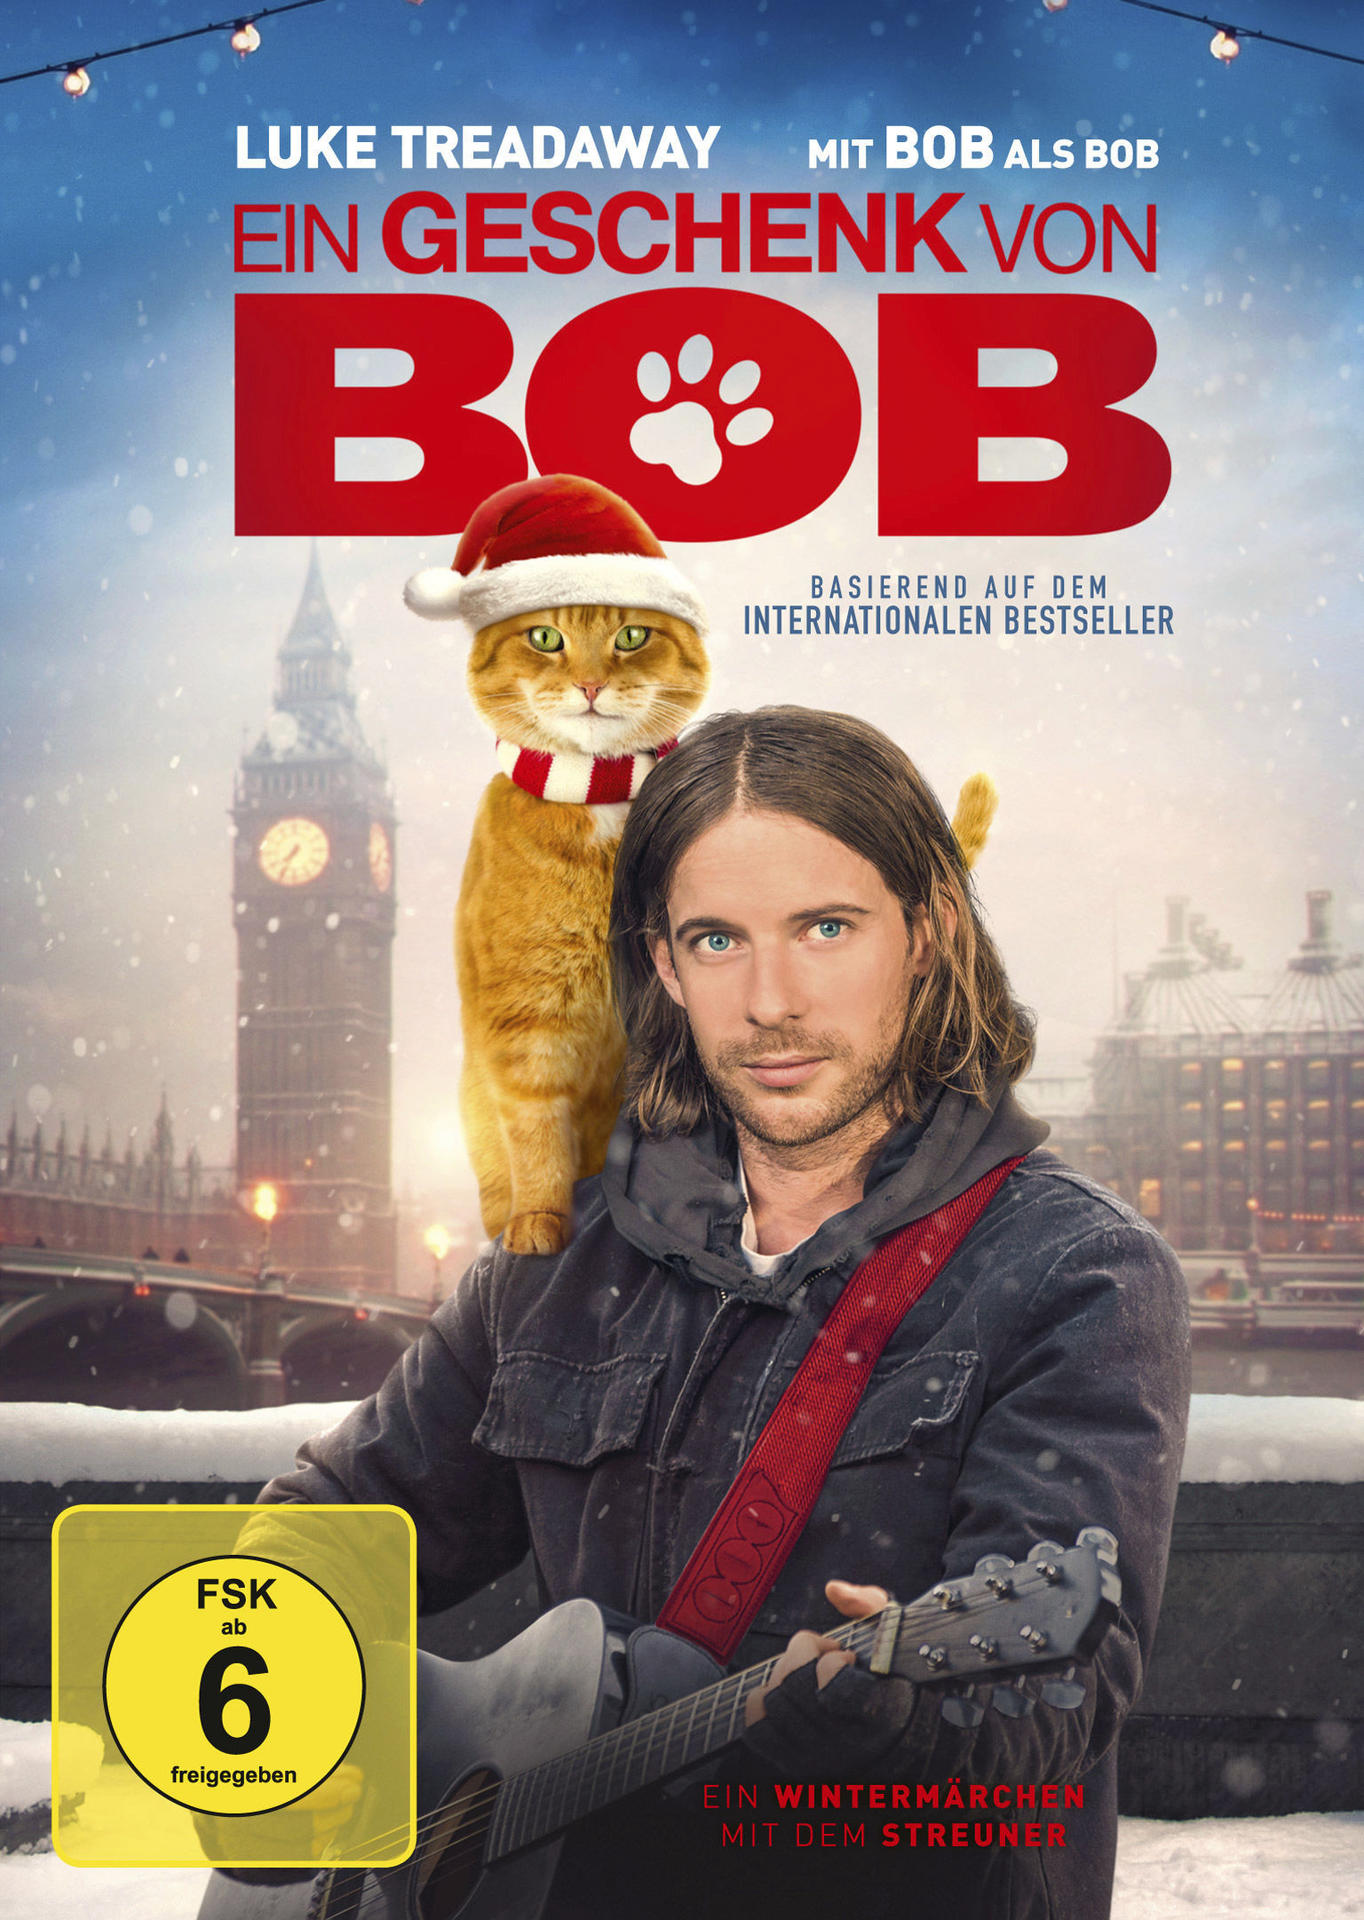 Ein Geschenk von DVD Bob